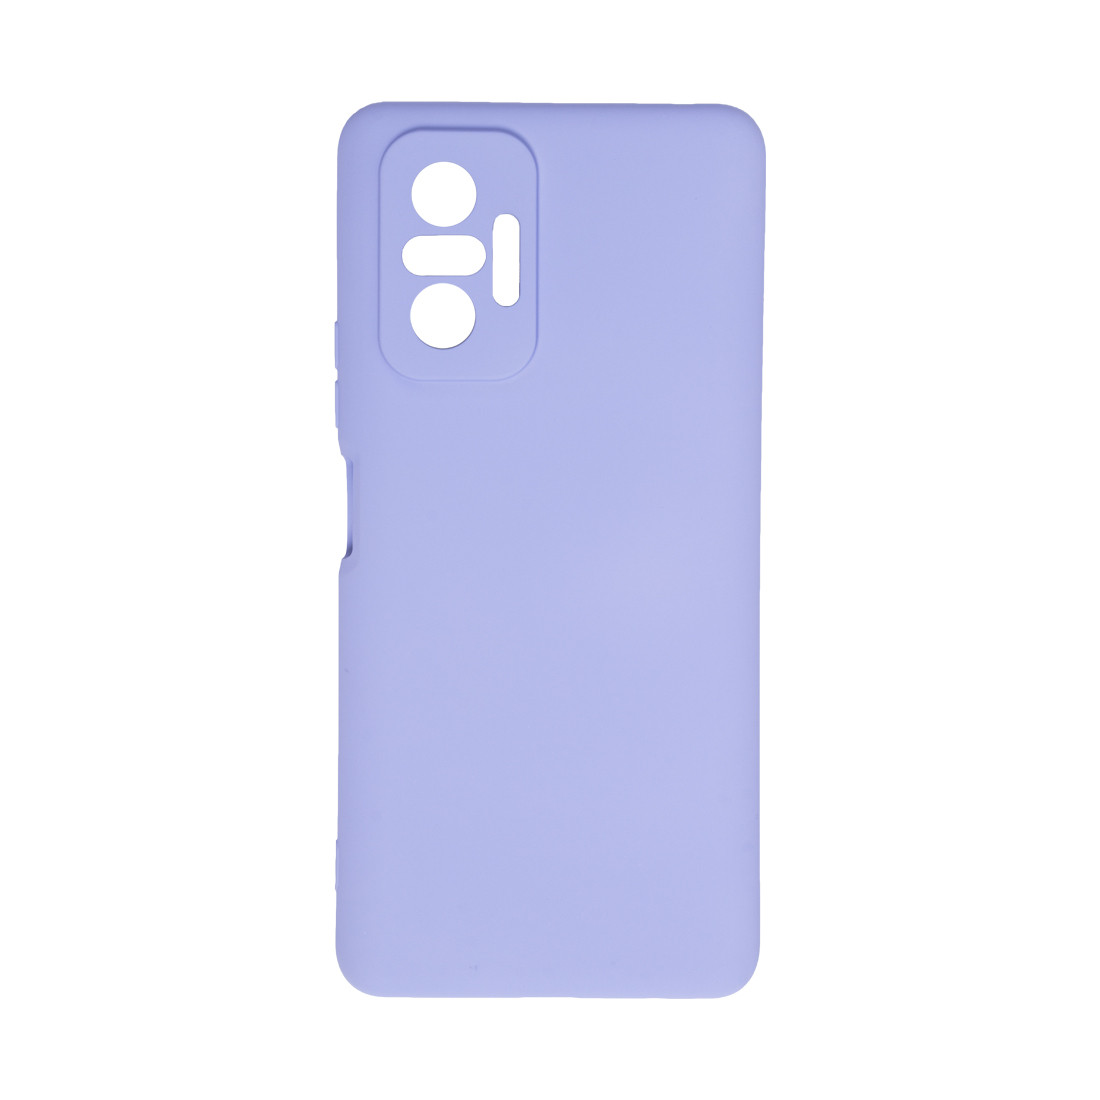 Чехол для телефона  X-Game  XG-HS40  для Redmi Note 10 Pro  Силиконовый  Сирень  Пол. пакет